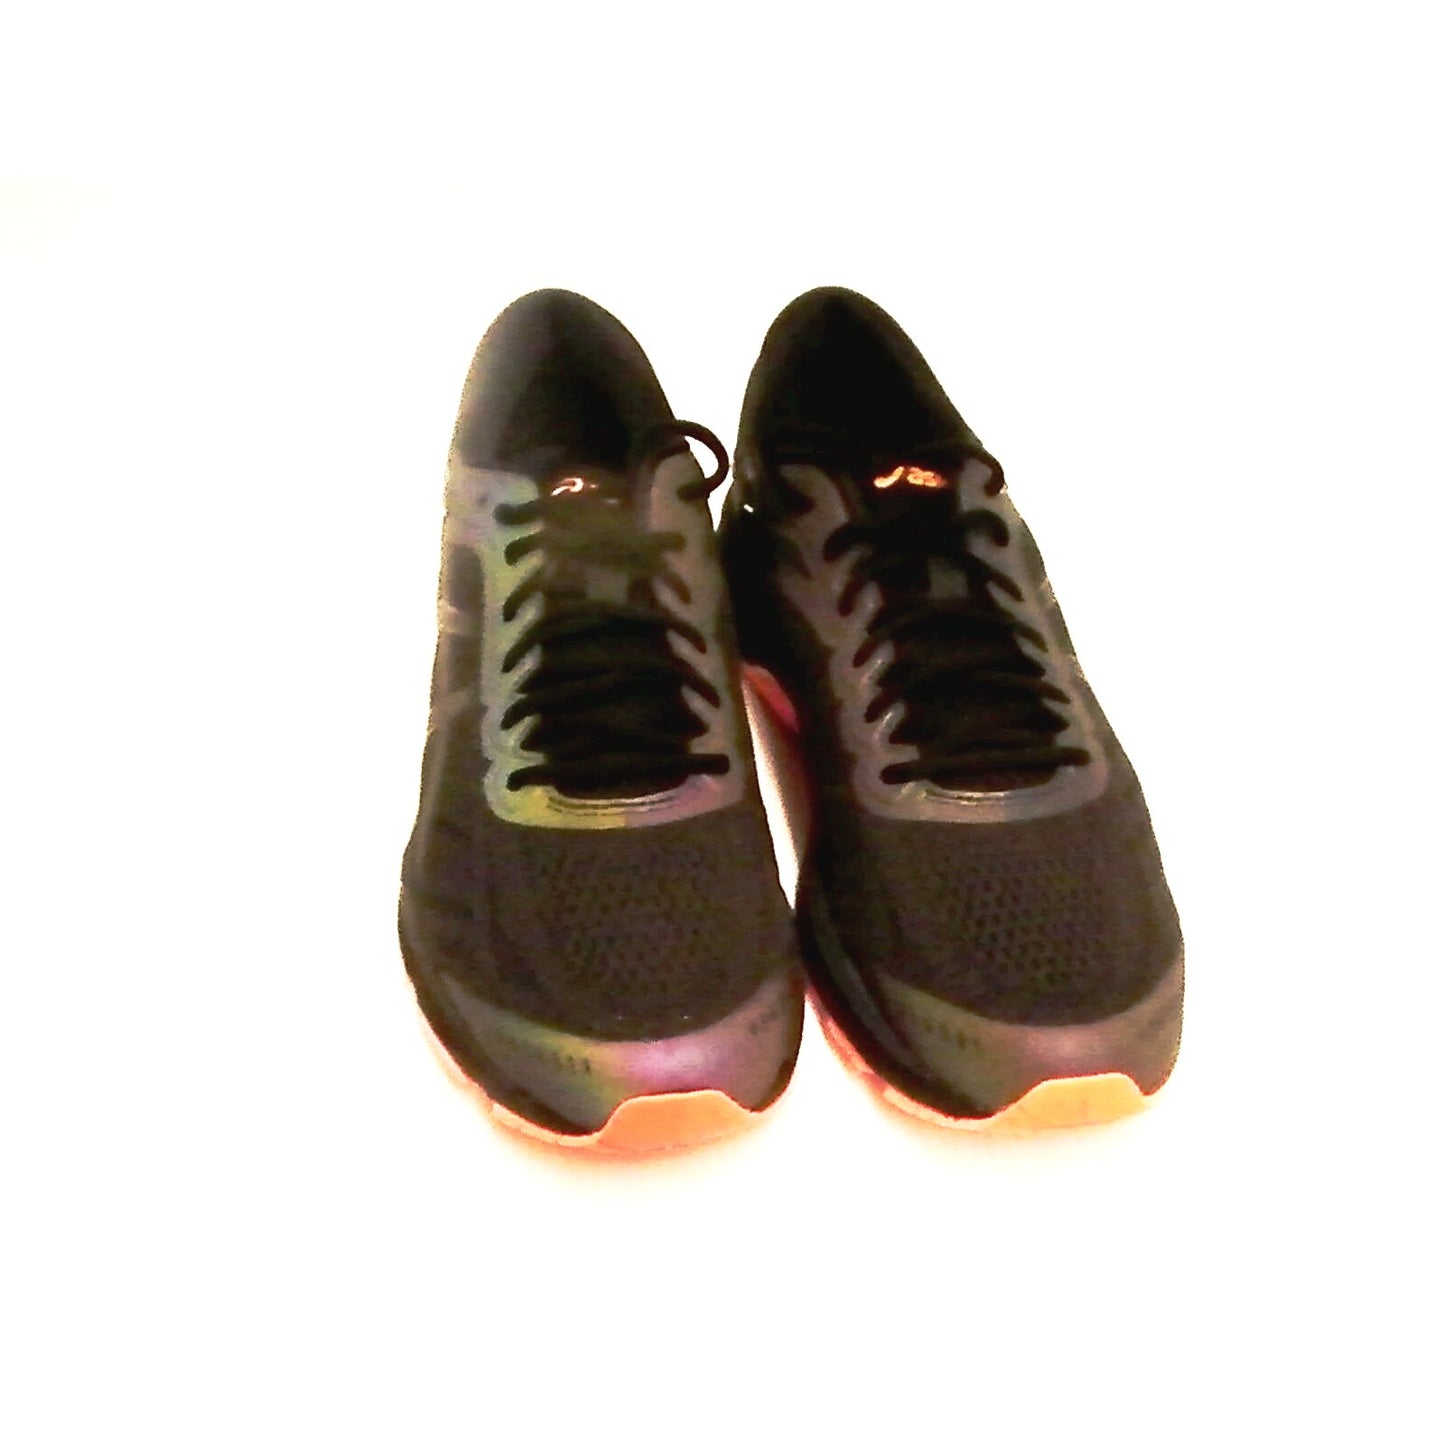 Asics men's gel kayano 24 lite show shoes size 8.5 - Classic Fashion Deals